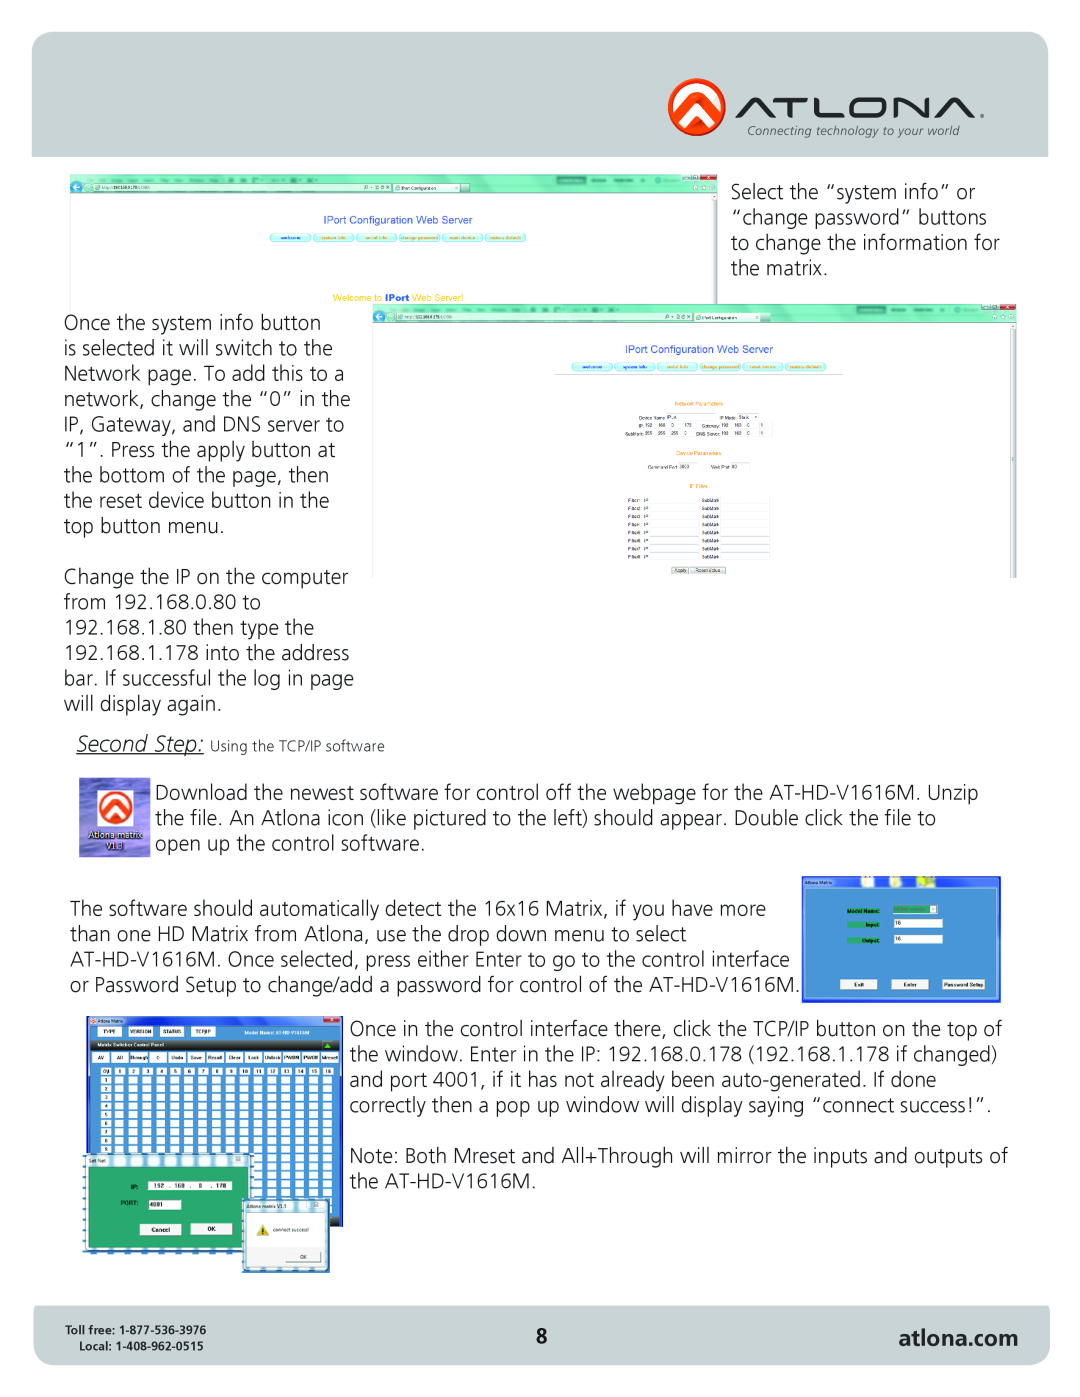 Atlona AT-HD-V1616M user manual atlona.com, Second Step Using the TCP/IP software 